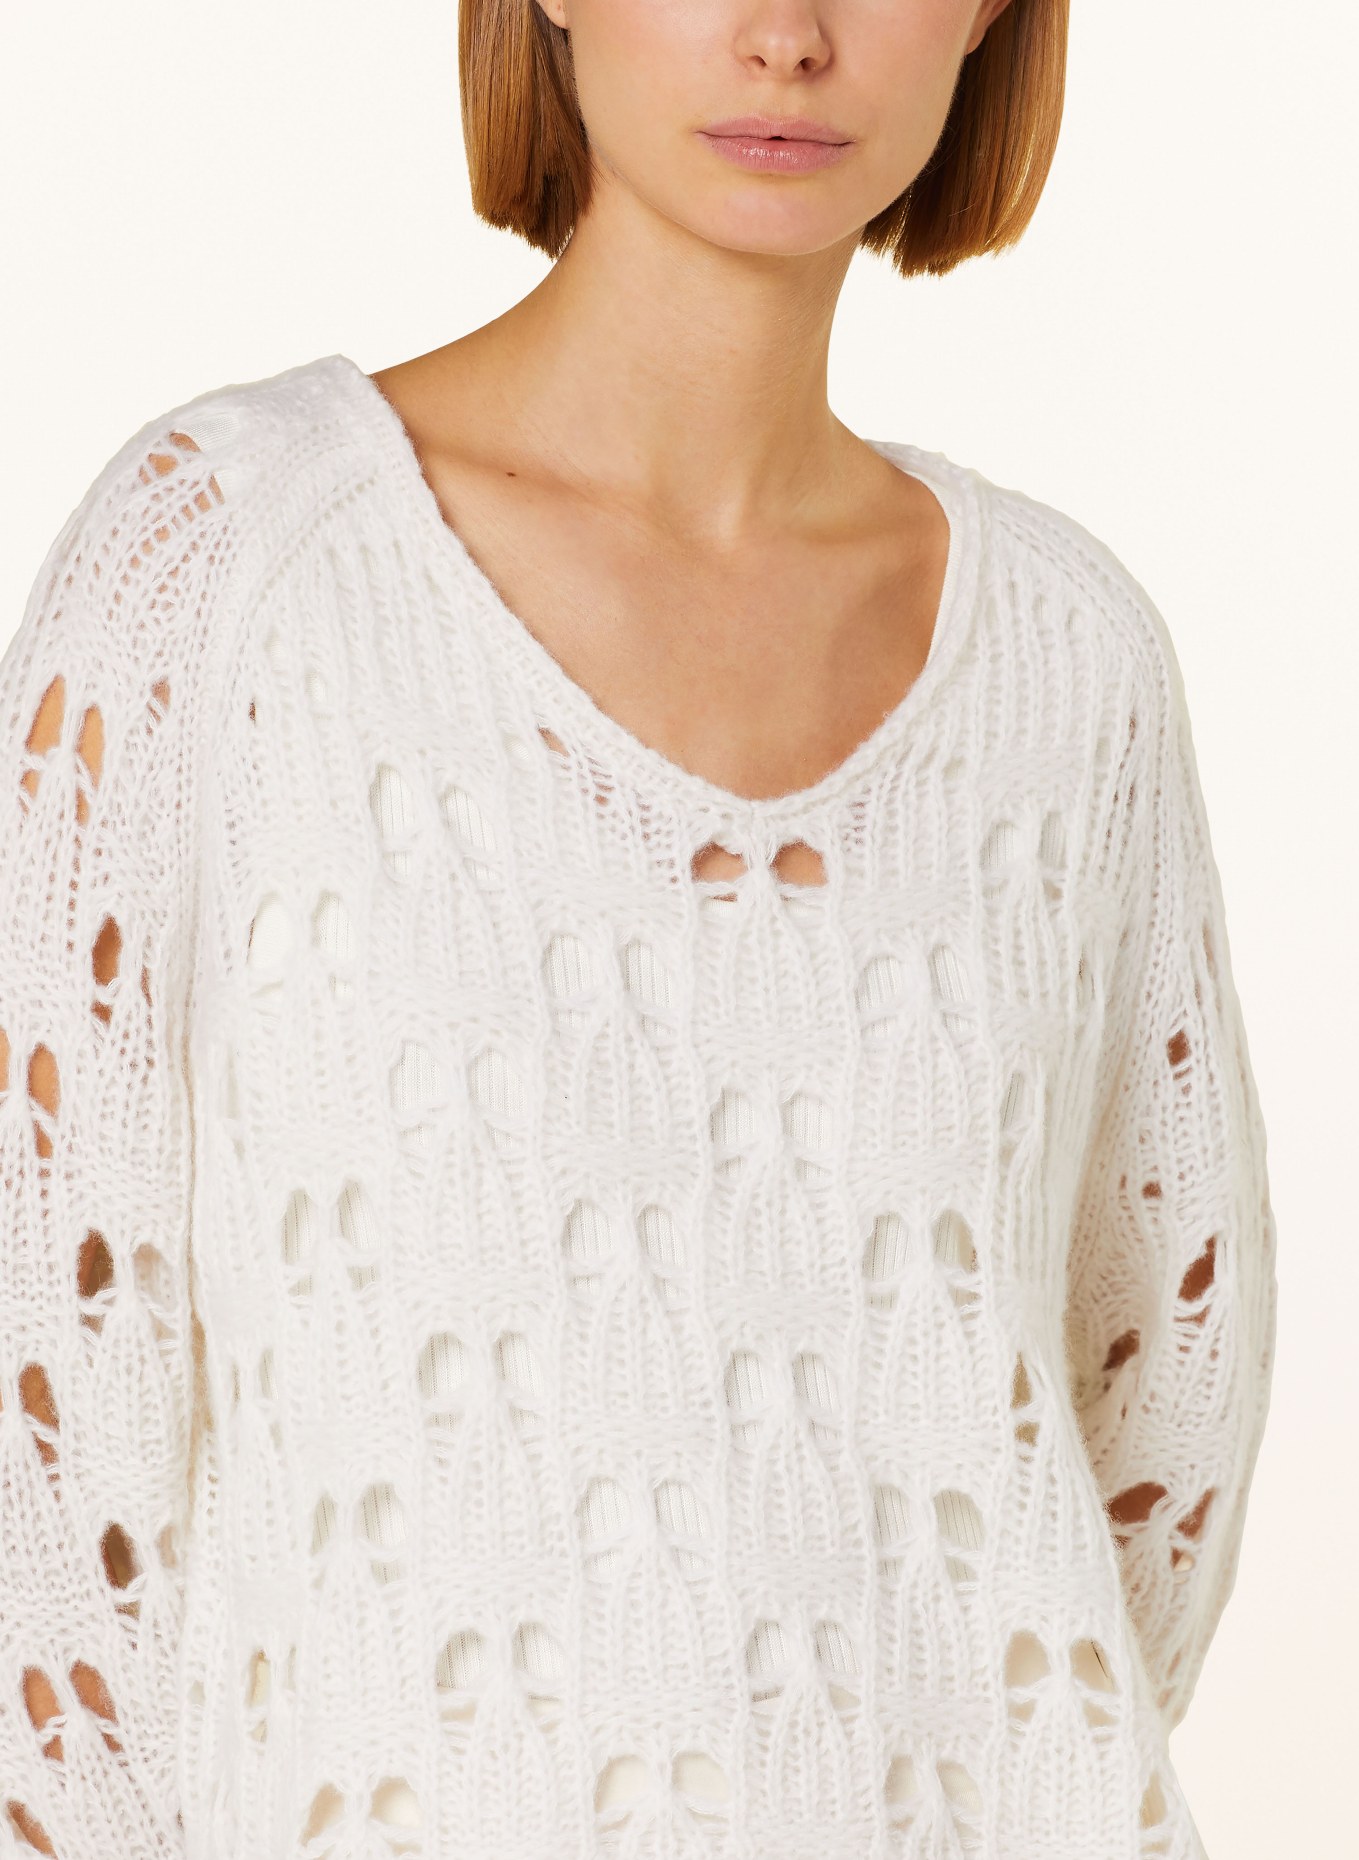 HEMISPHERE Sweater with cashmere, Color: ECRU (Image 4)